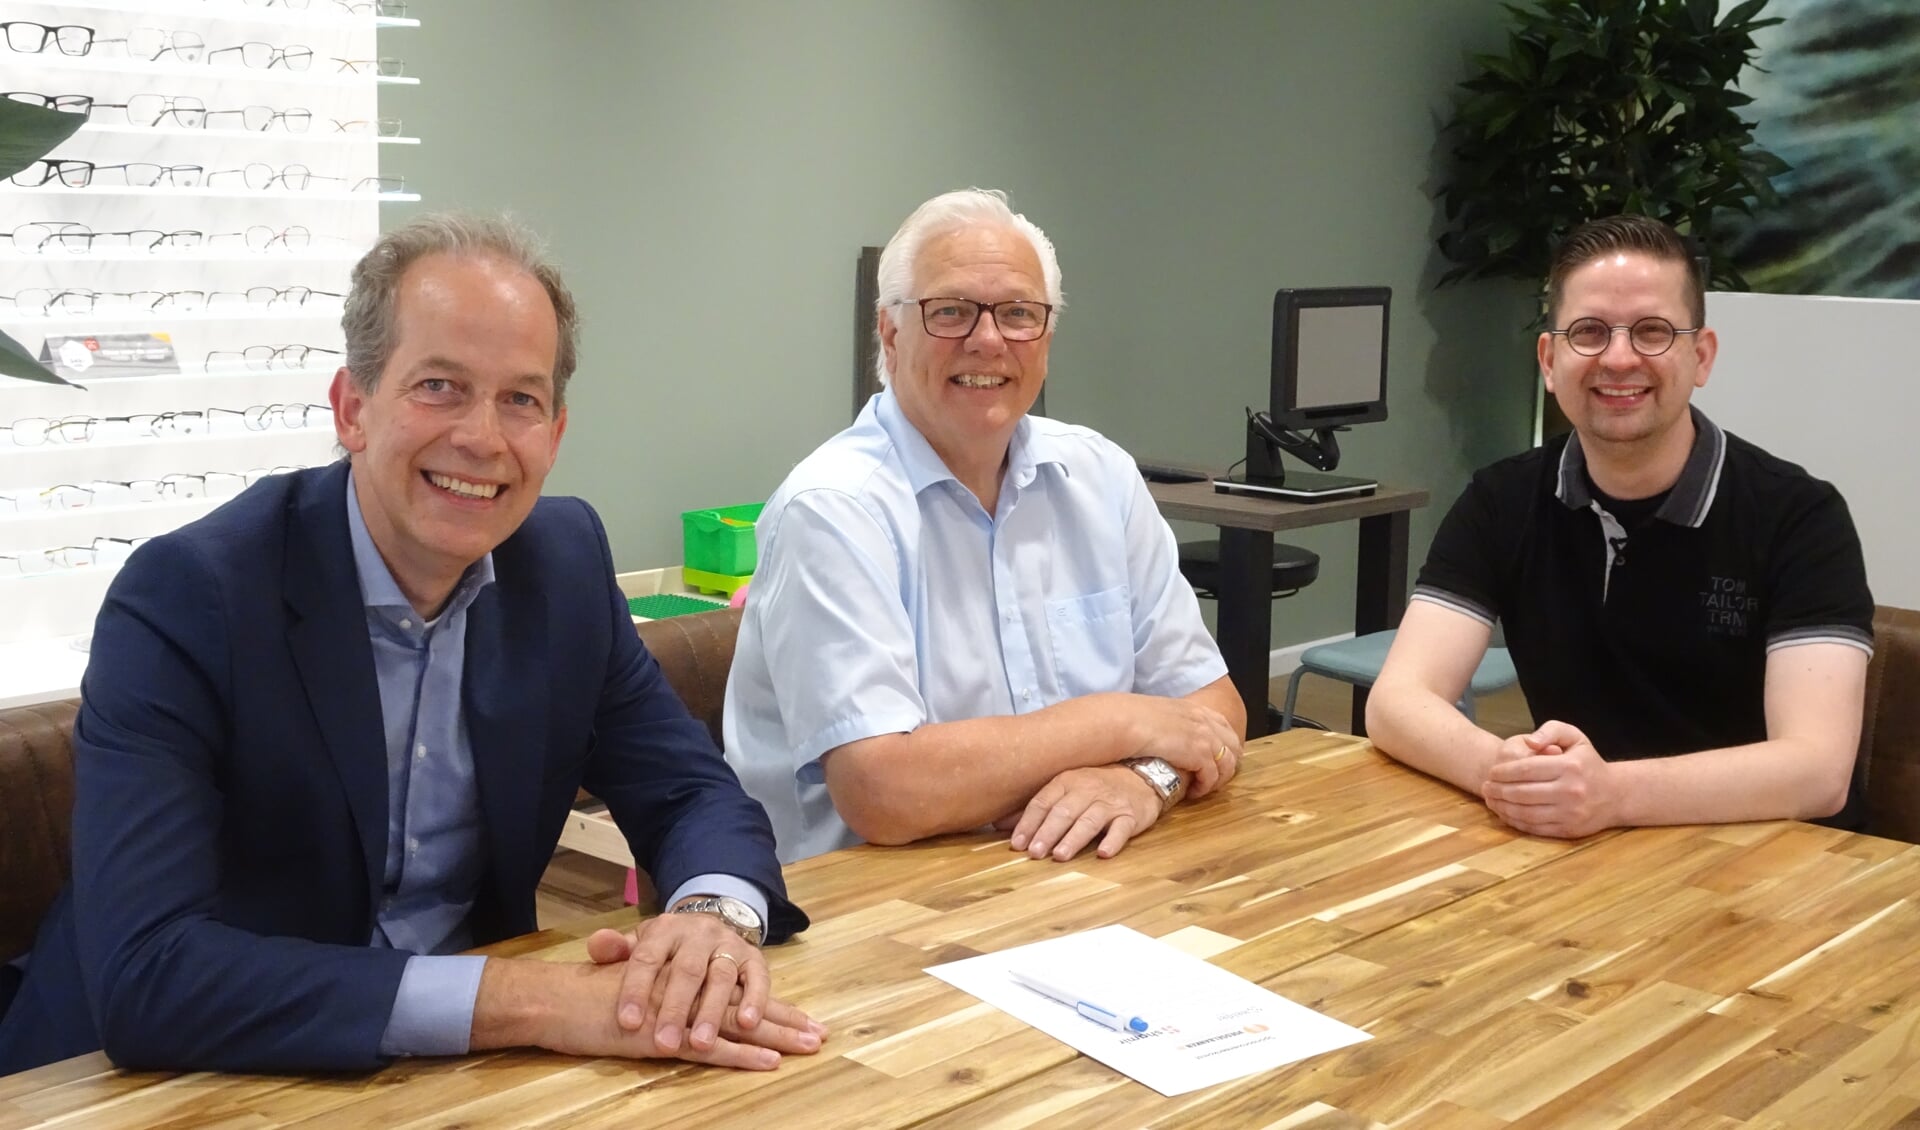 Tevreden gezichten na de ondertekening van de samenwerkingsovereenkomst. Van links naar rechts: Theo Bax, René de Jong en Jurjen Tiele.